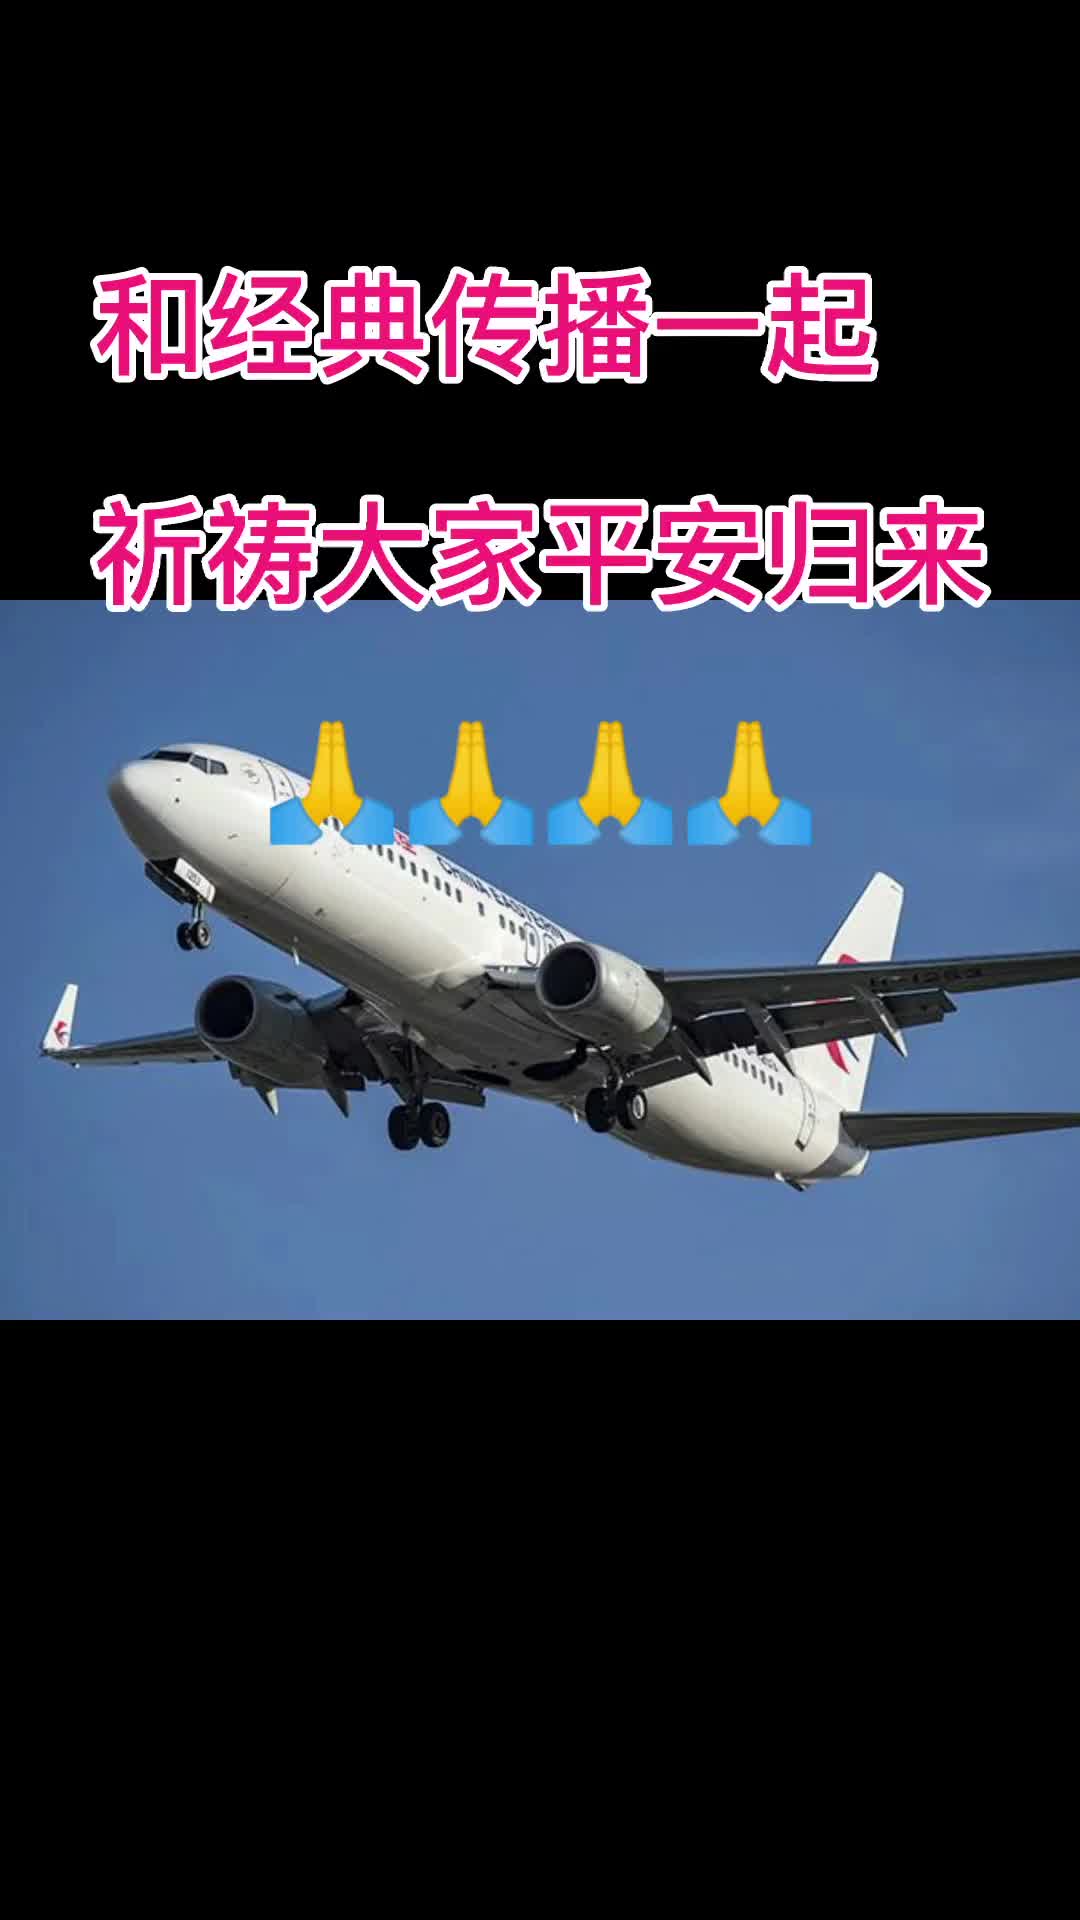 祈祷东航飞机平安图片